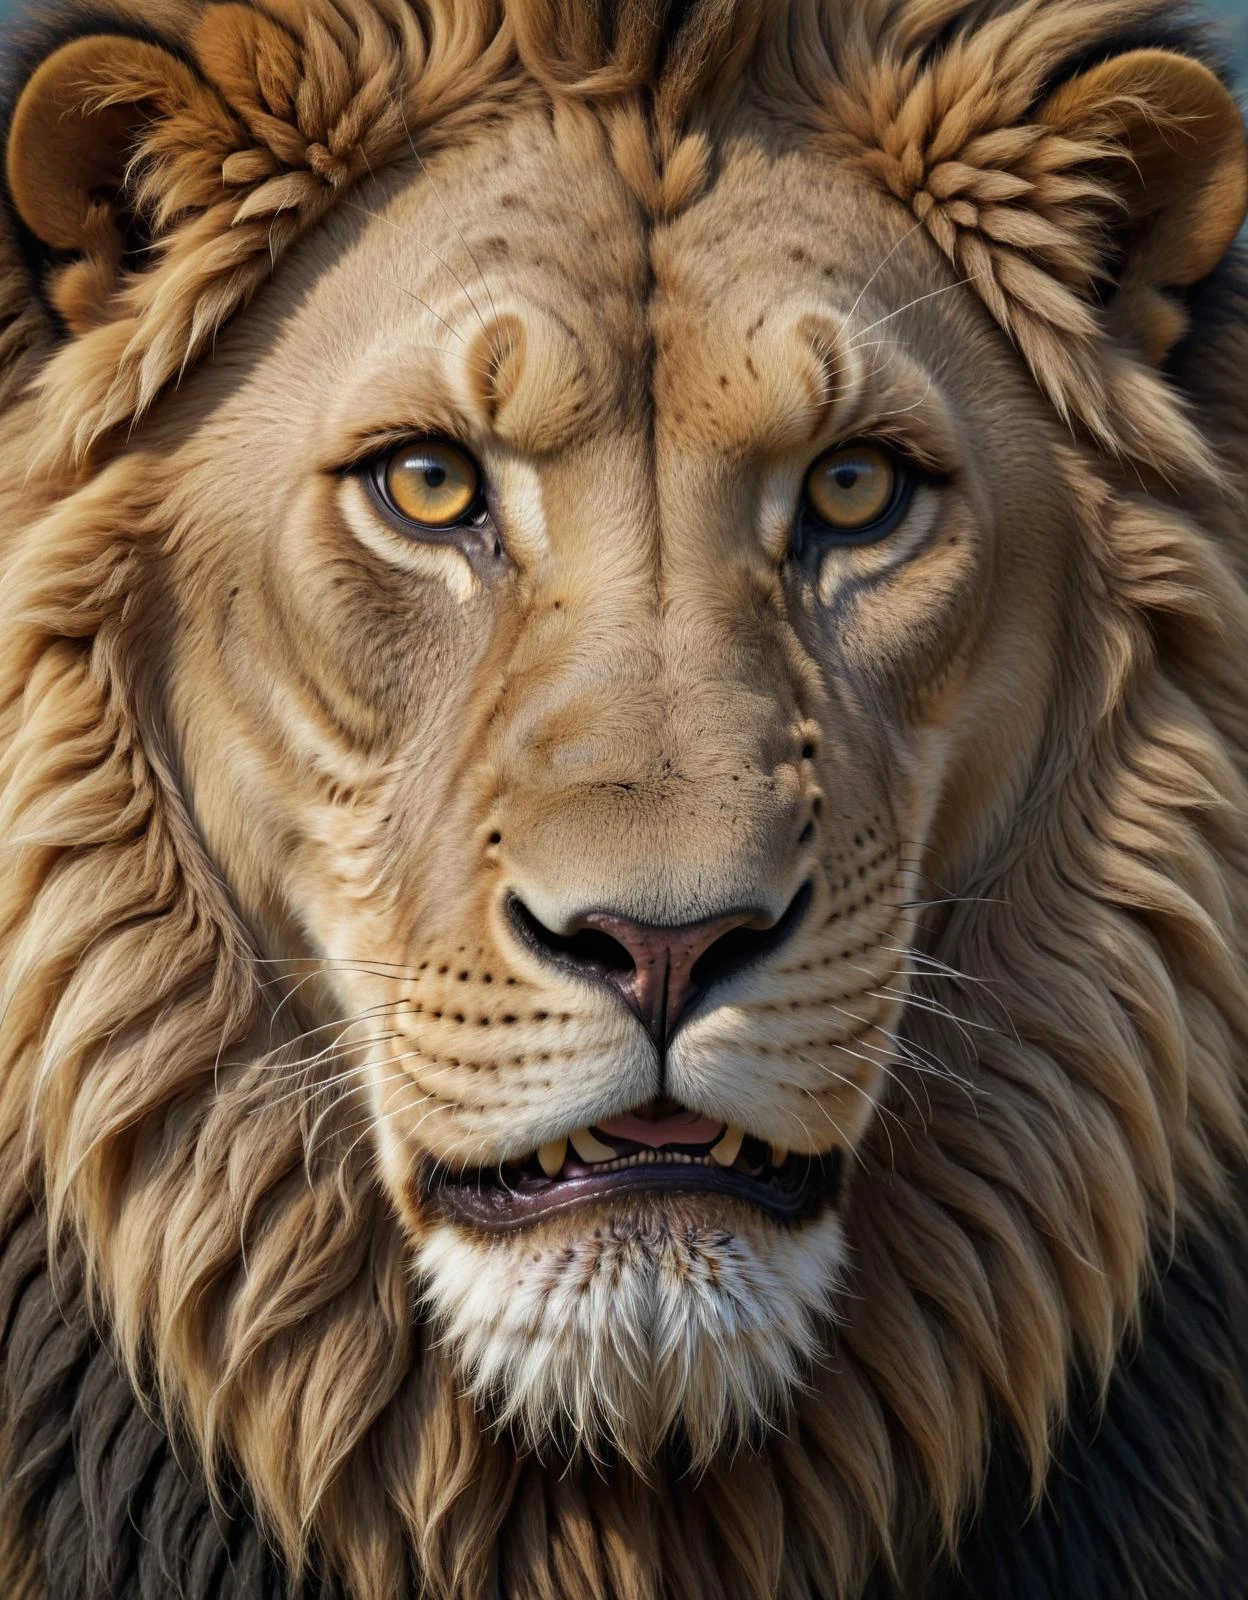 美丽的 3D 渲染，一只极简主义的狮子，凝视着眼睛，享受着轻松愉快的满足感，一幅高度详细的幻想肖像, 8K 及以上高清画质，细节丰富，品质完美, 模拟粗糙的纹理和粗糙的胶片颗粒